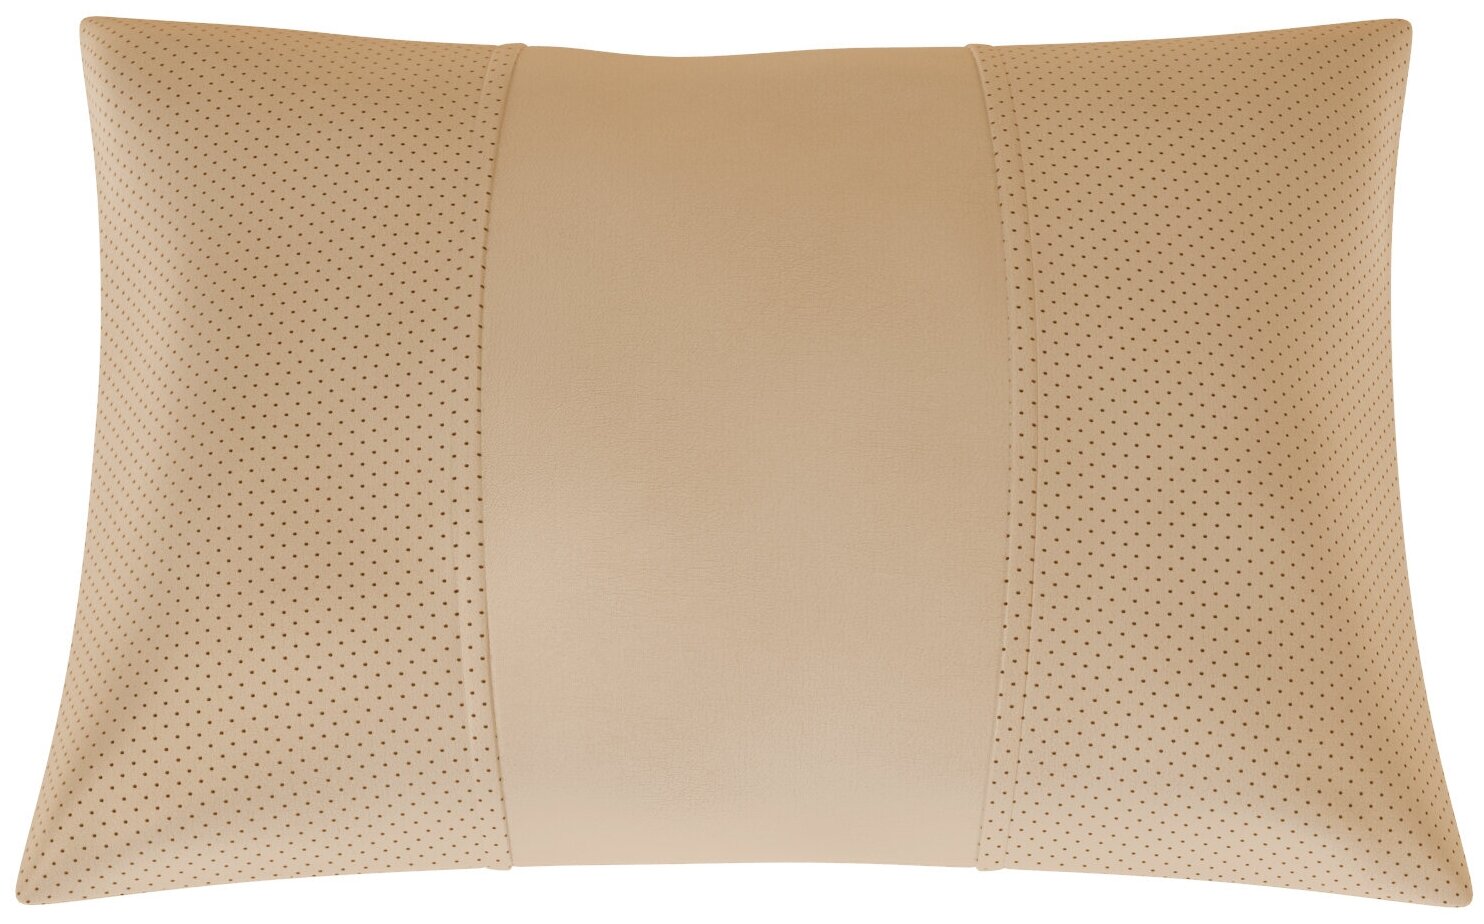 Автомобильная подушка для KIA Optima (Киа Оптима). Экокожа. Середина: бежевая гладкая экокожа. Боковины: бежевая экокожа с перфорацией. 1 шт.